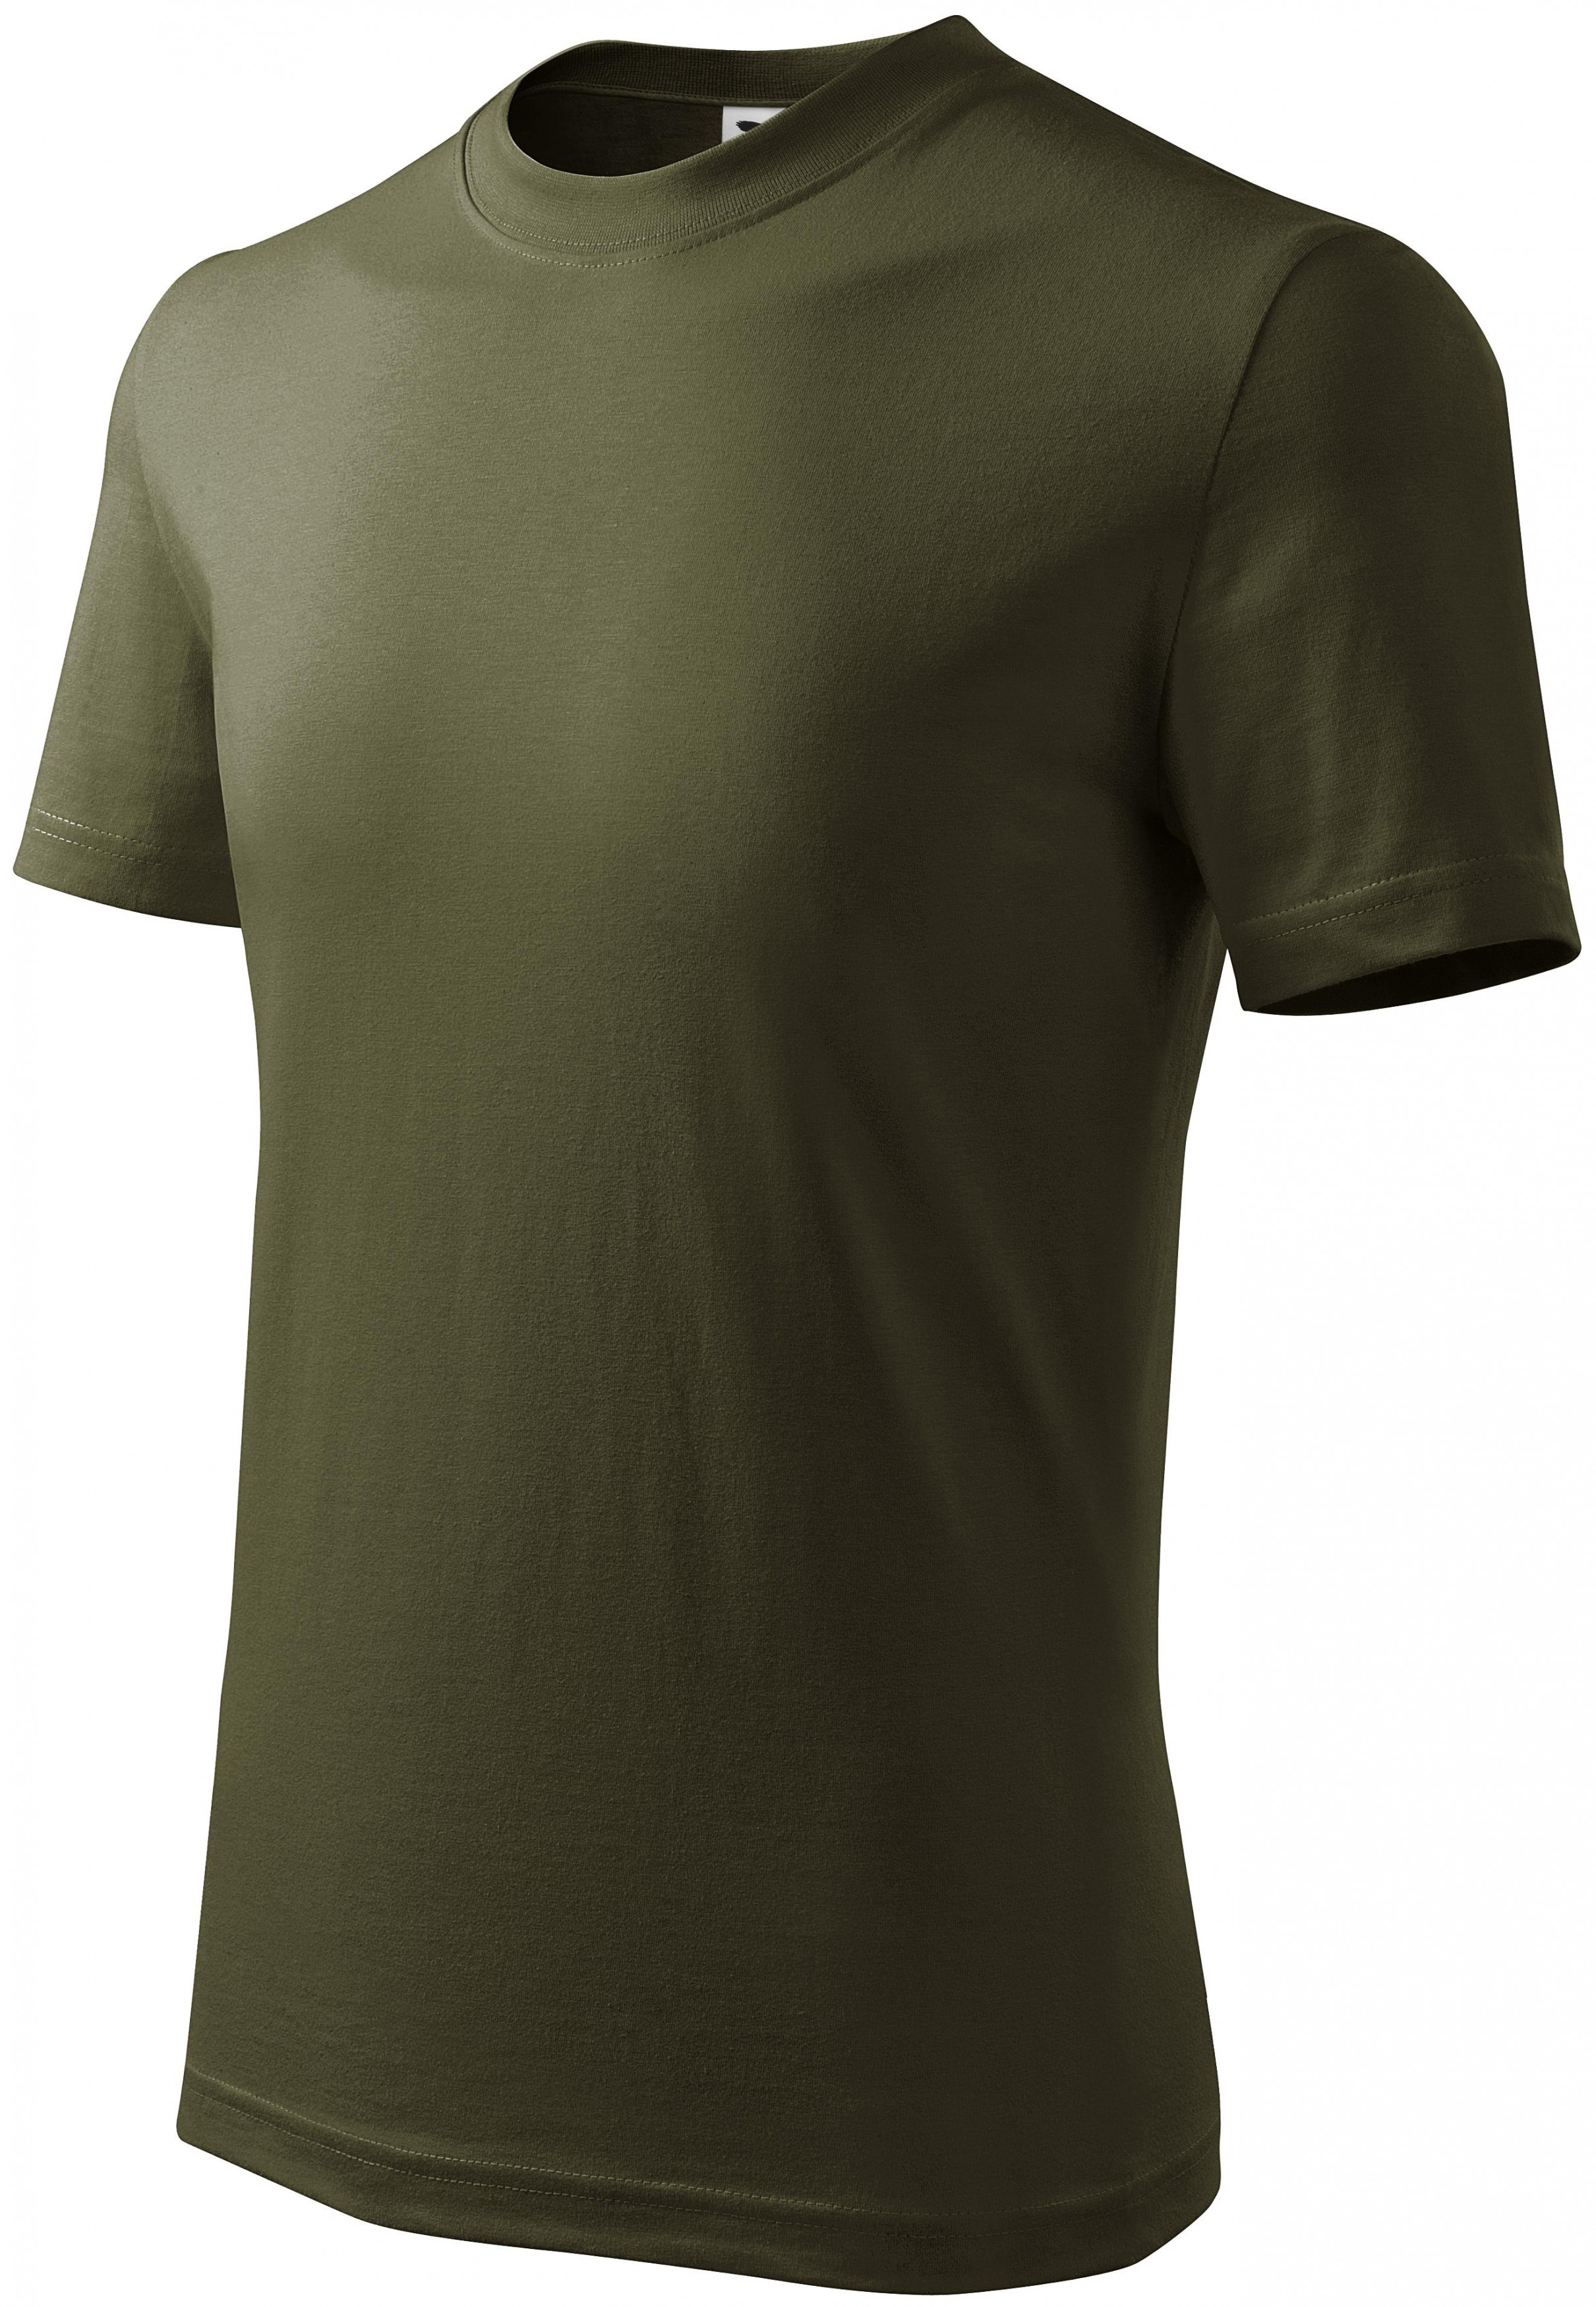 Detské tričko jednoduché, military, 146cm / 10rokov